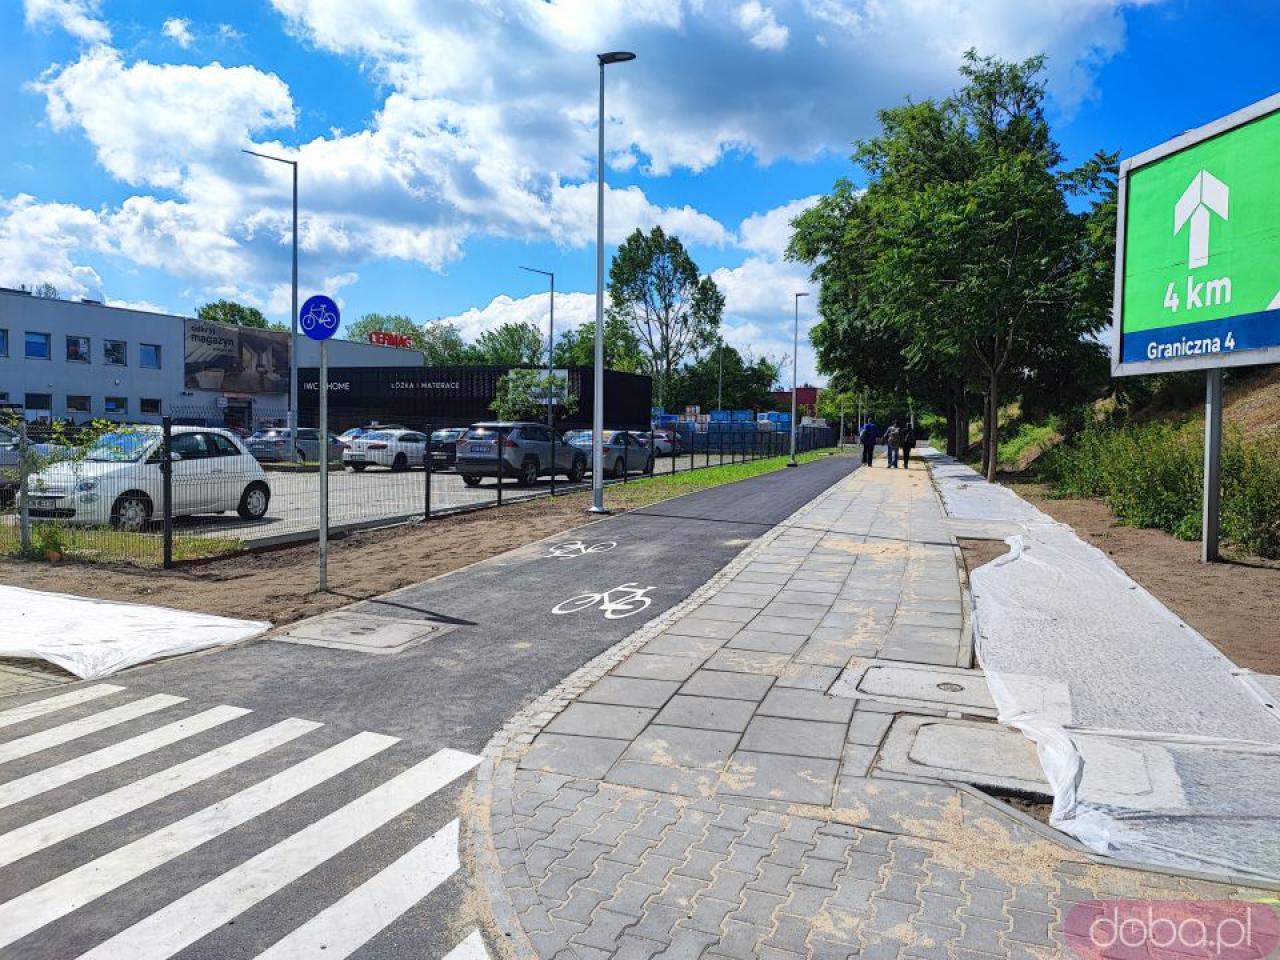 [FOTO] Nowa trasa rowerowa między Strzegomską a Robotniczą prawie gotowa